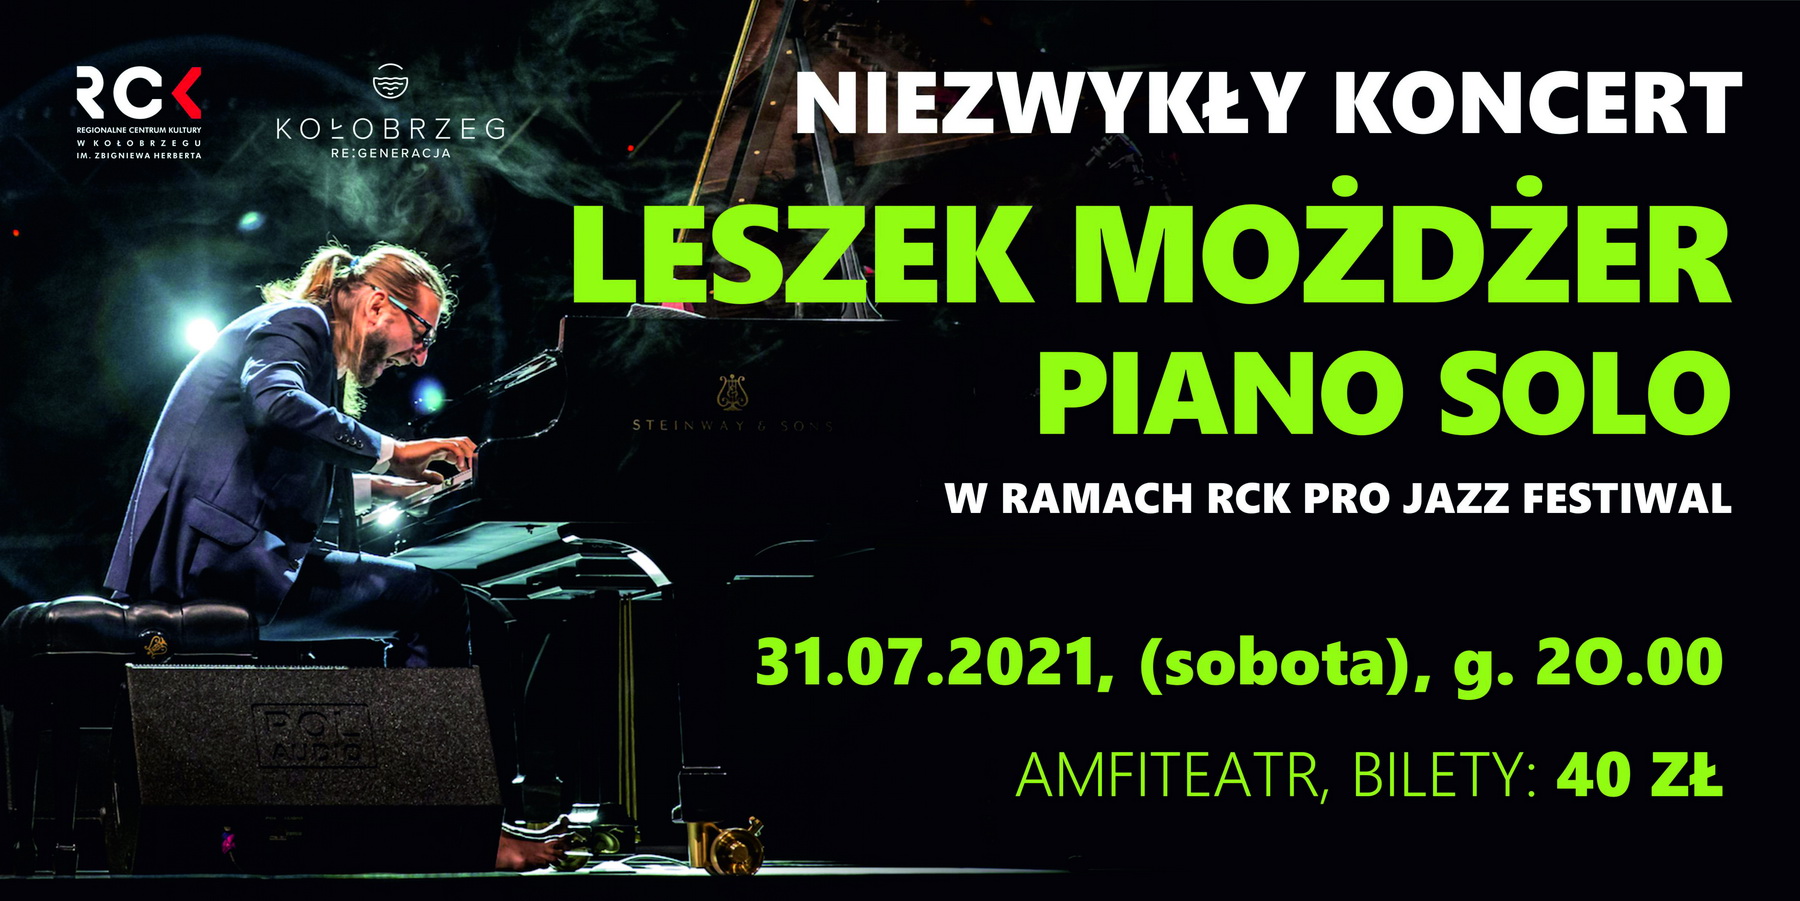 Leszek Możdżer Piano Solo - bilety jeszcze dostępne